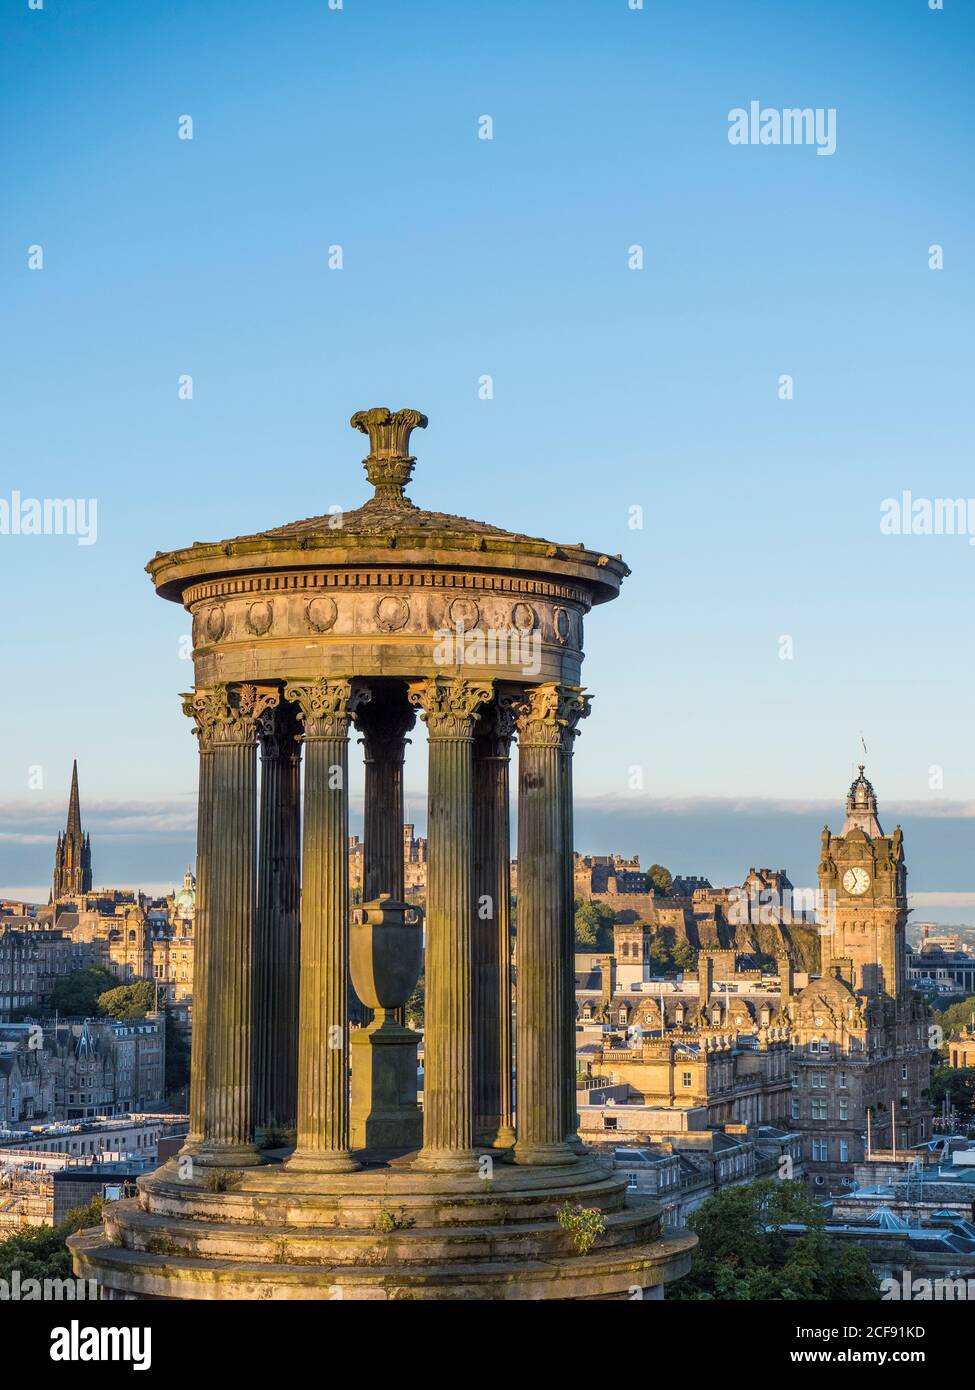 Amanecer, Vista del Monumento Dugald Stewart, Castillo de Edimburgo y la Torre de Balmoral Hotel, Edimburgo, Escocia, Reino Unido, GB. Foto de stock